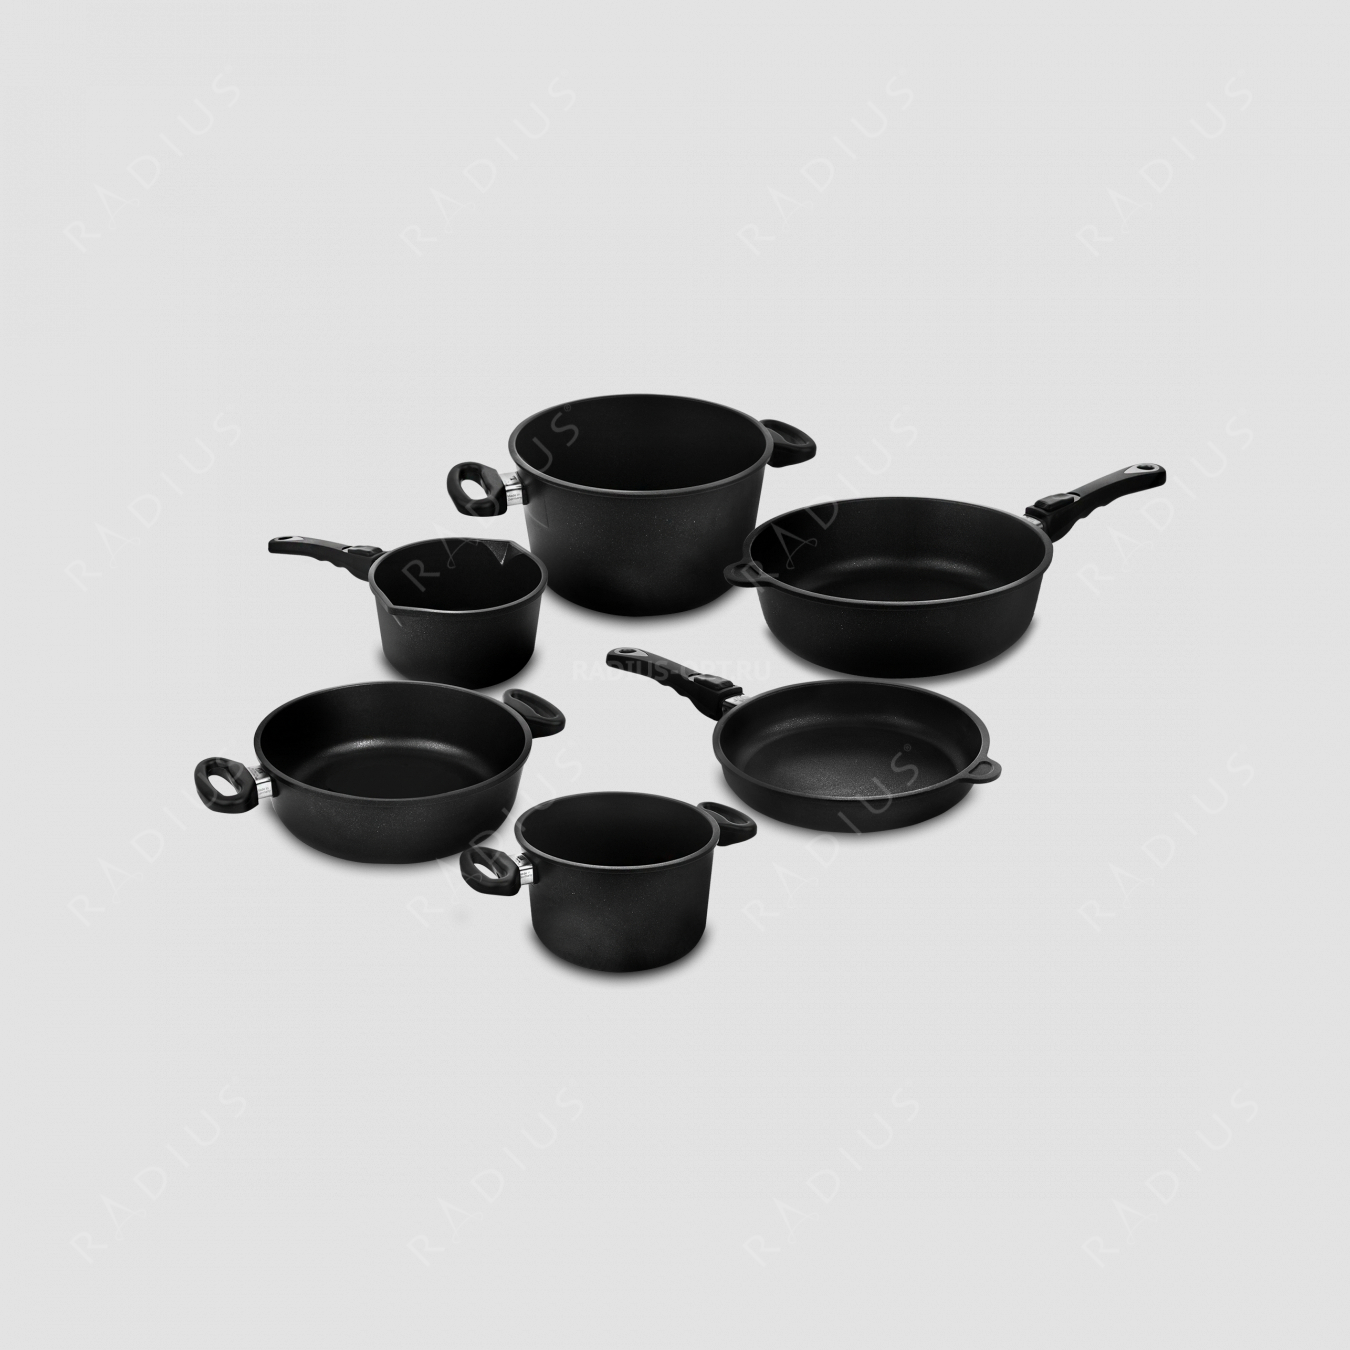 Набор посуды из 6-ти предметов, литой алюминий с антипригарным покрытием, толщина дна - 10 мм, серия Frying Pans, AMT, Германия